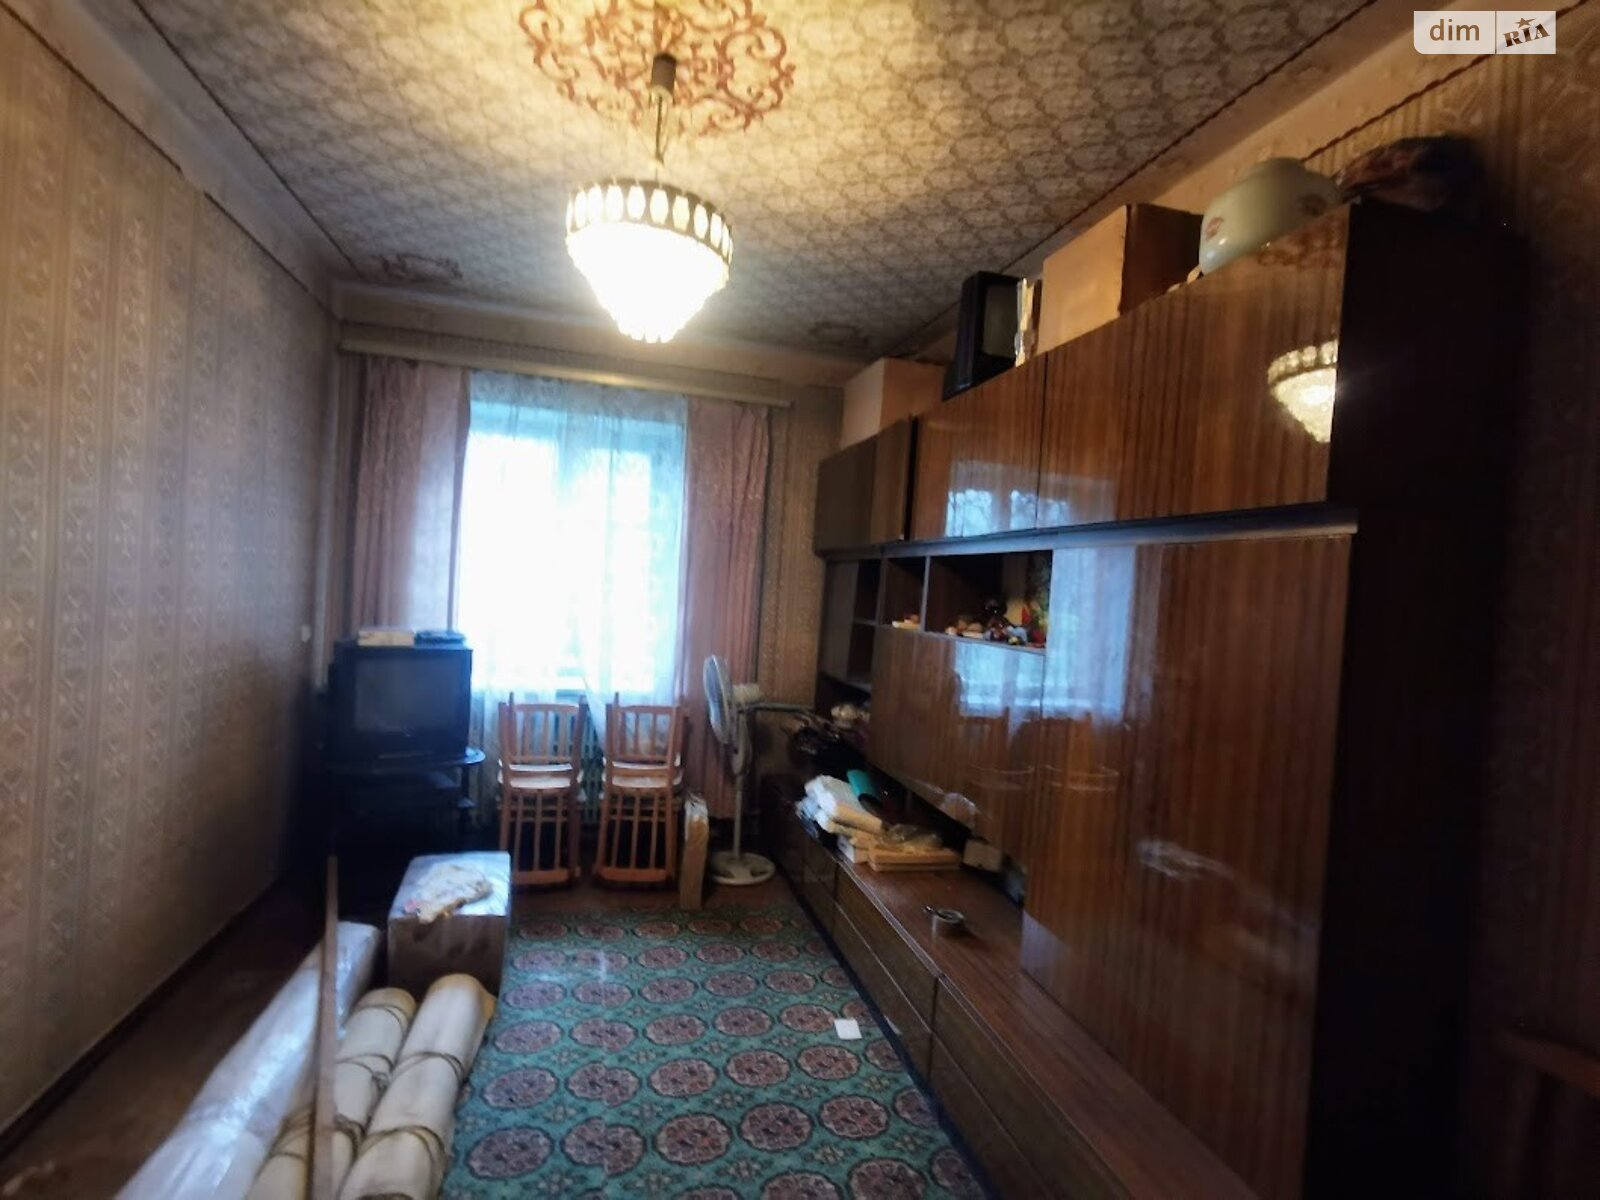 Продажа части дома в Верхнеднепровске, район Верхнеднепровск, 3 комнаты фото 1